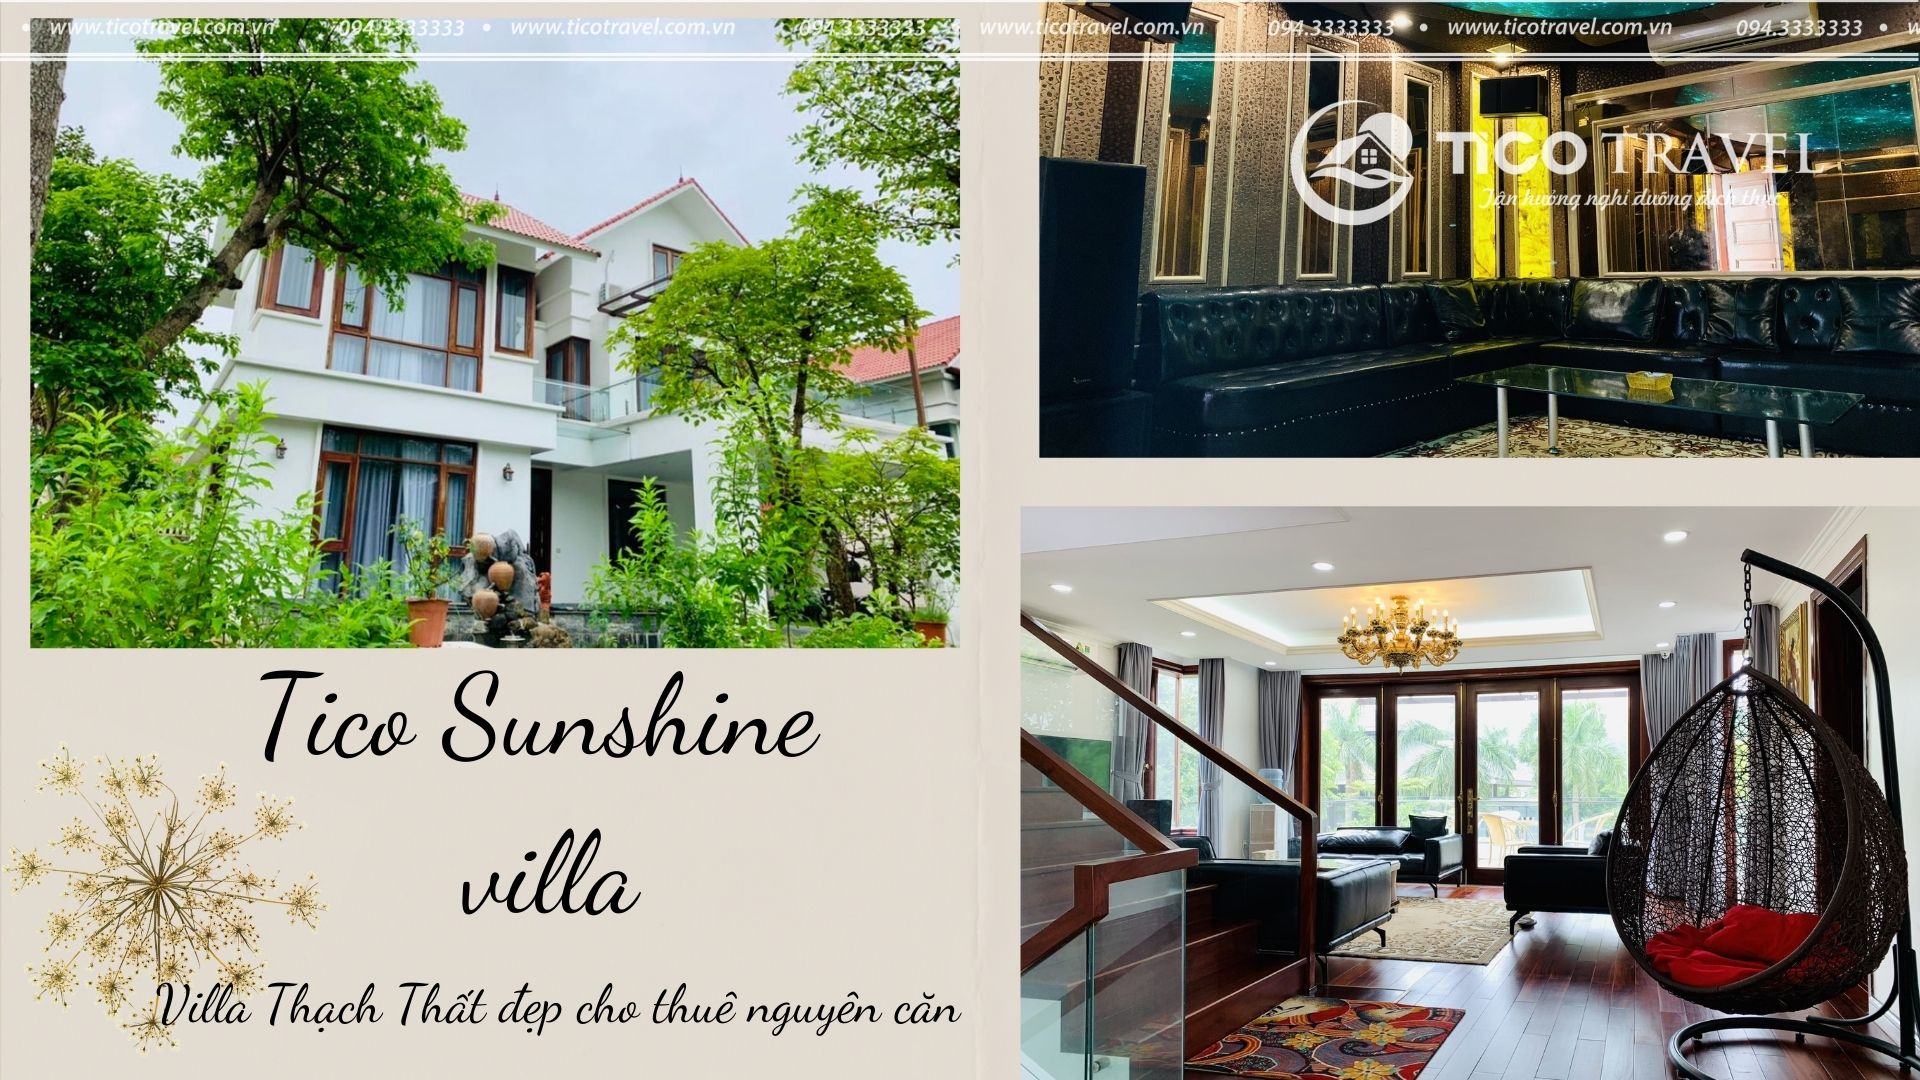 Tico Sunshine - villa quanh Hà Nội có hồ bơi